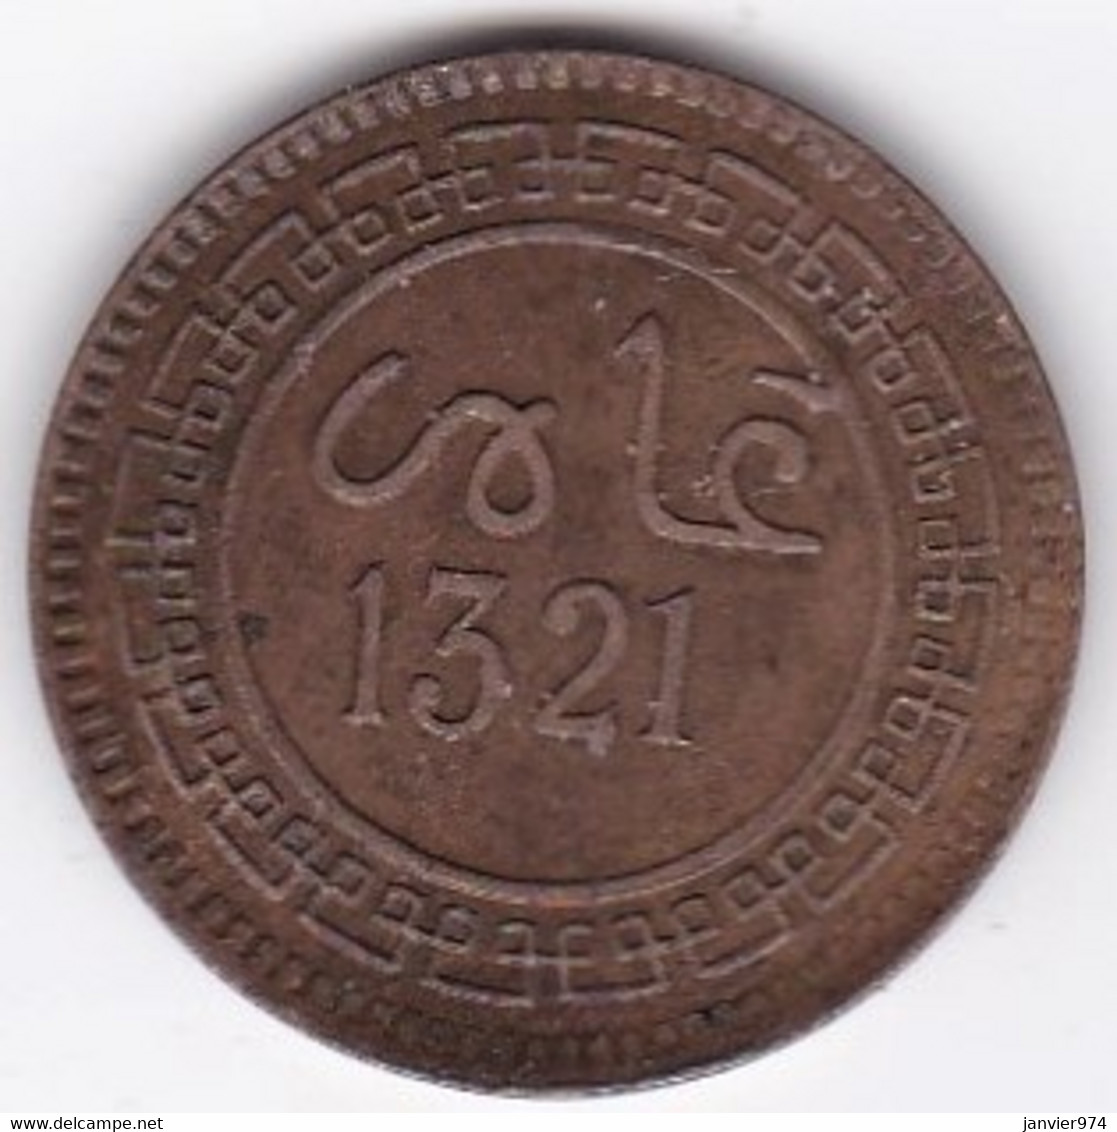 Maroc. 5 Mazunas (Mouzounas) HA 1321 (1903) Birmingham. Abdul Aziz I. Frappe Médaille. Bronze. - Marokko